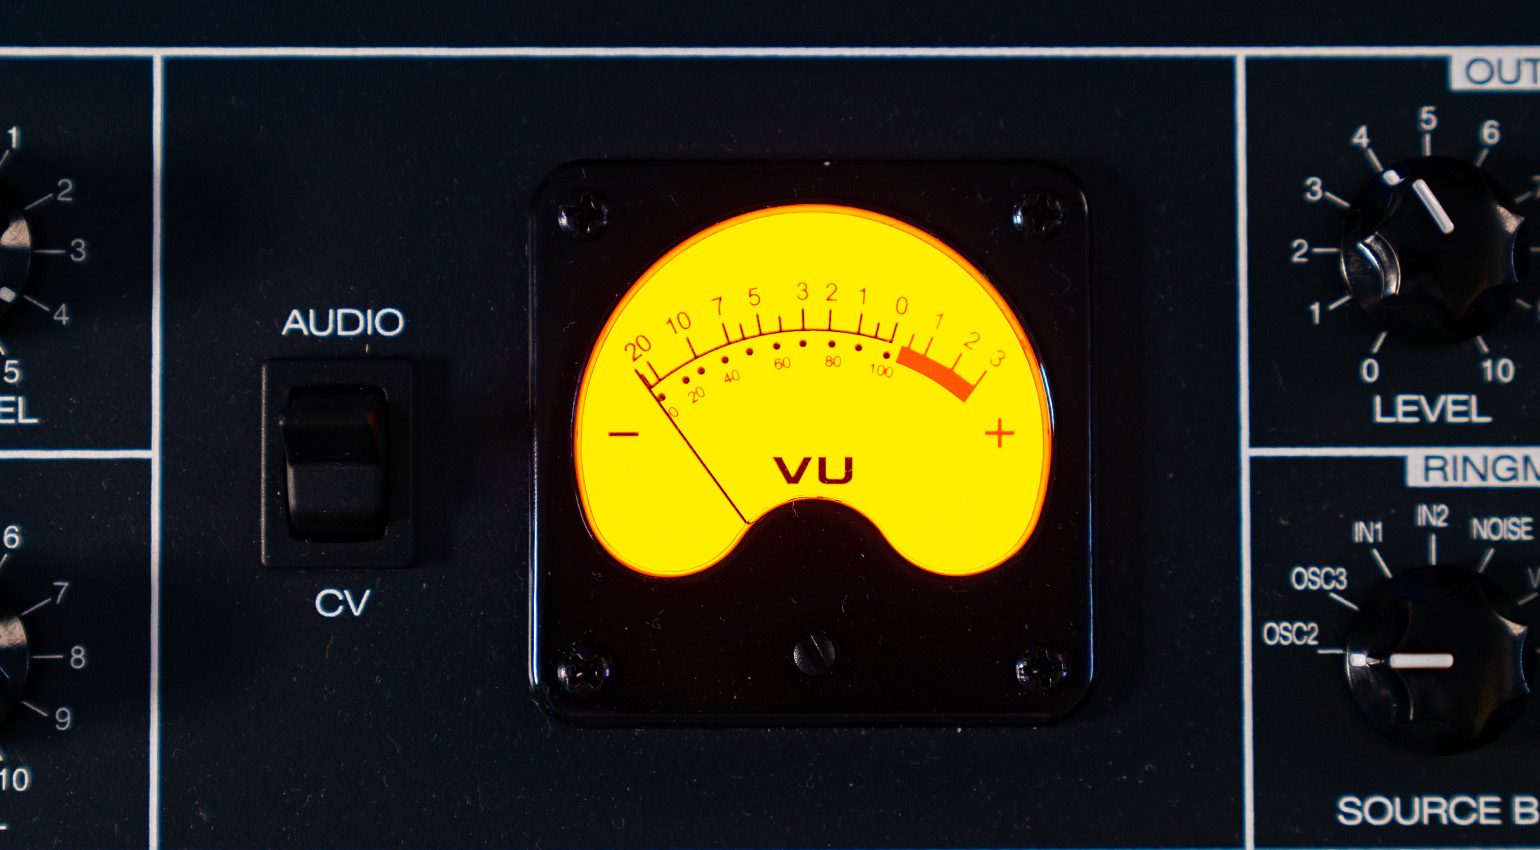 The VU meter